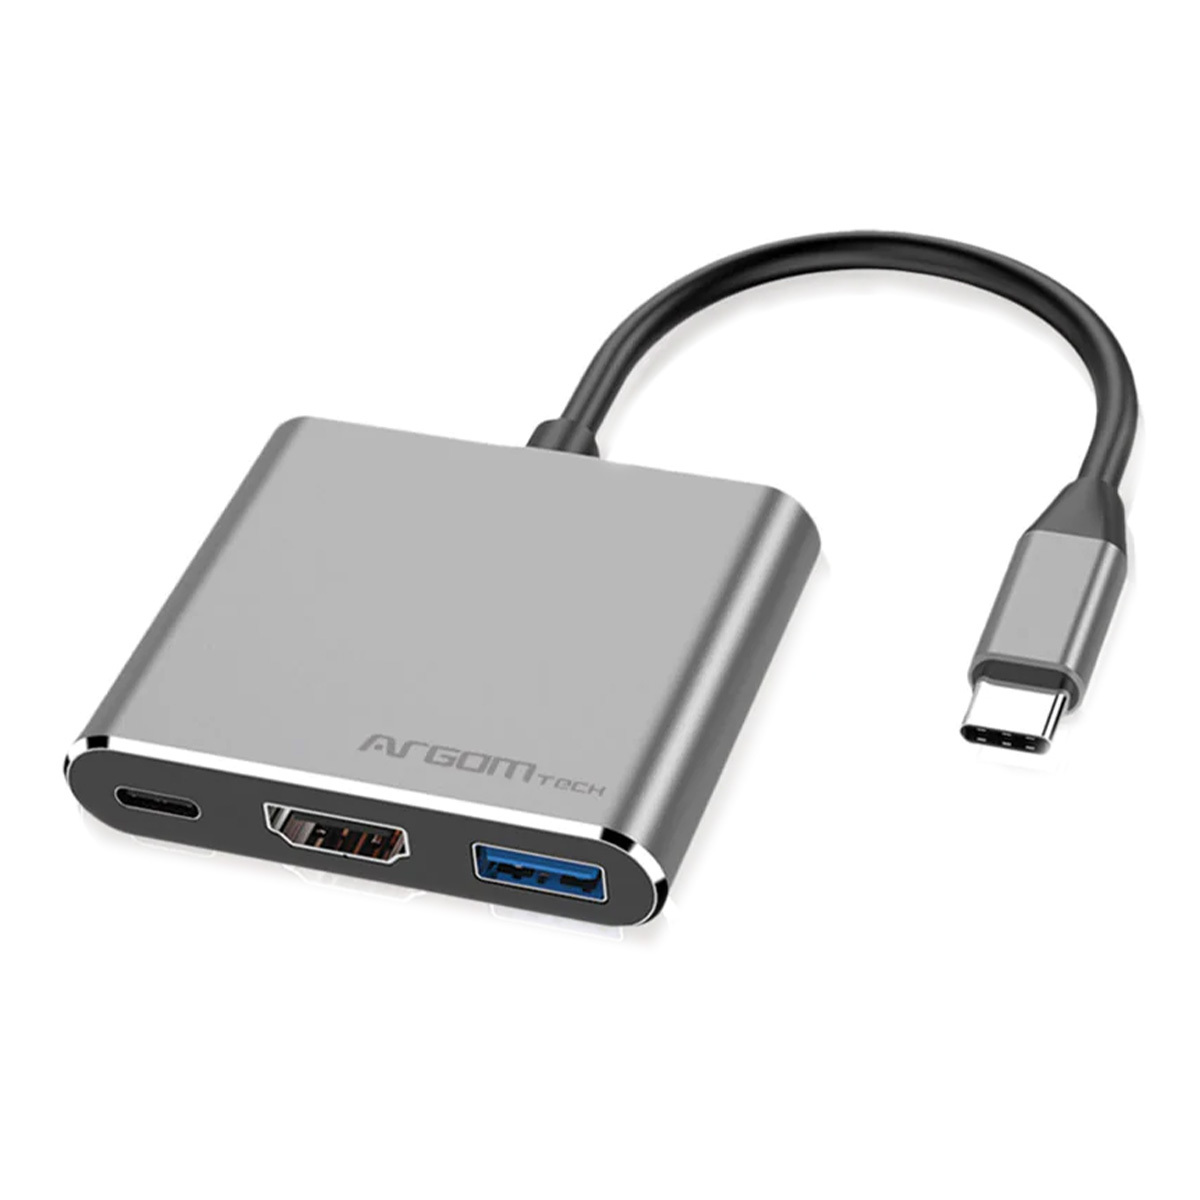 ADAPTADOR CONVERTIDOR DE USB TIPO C A USB 3.0 HUB